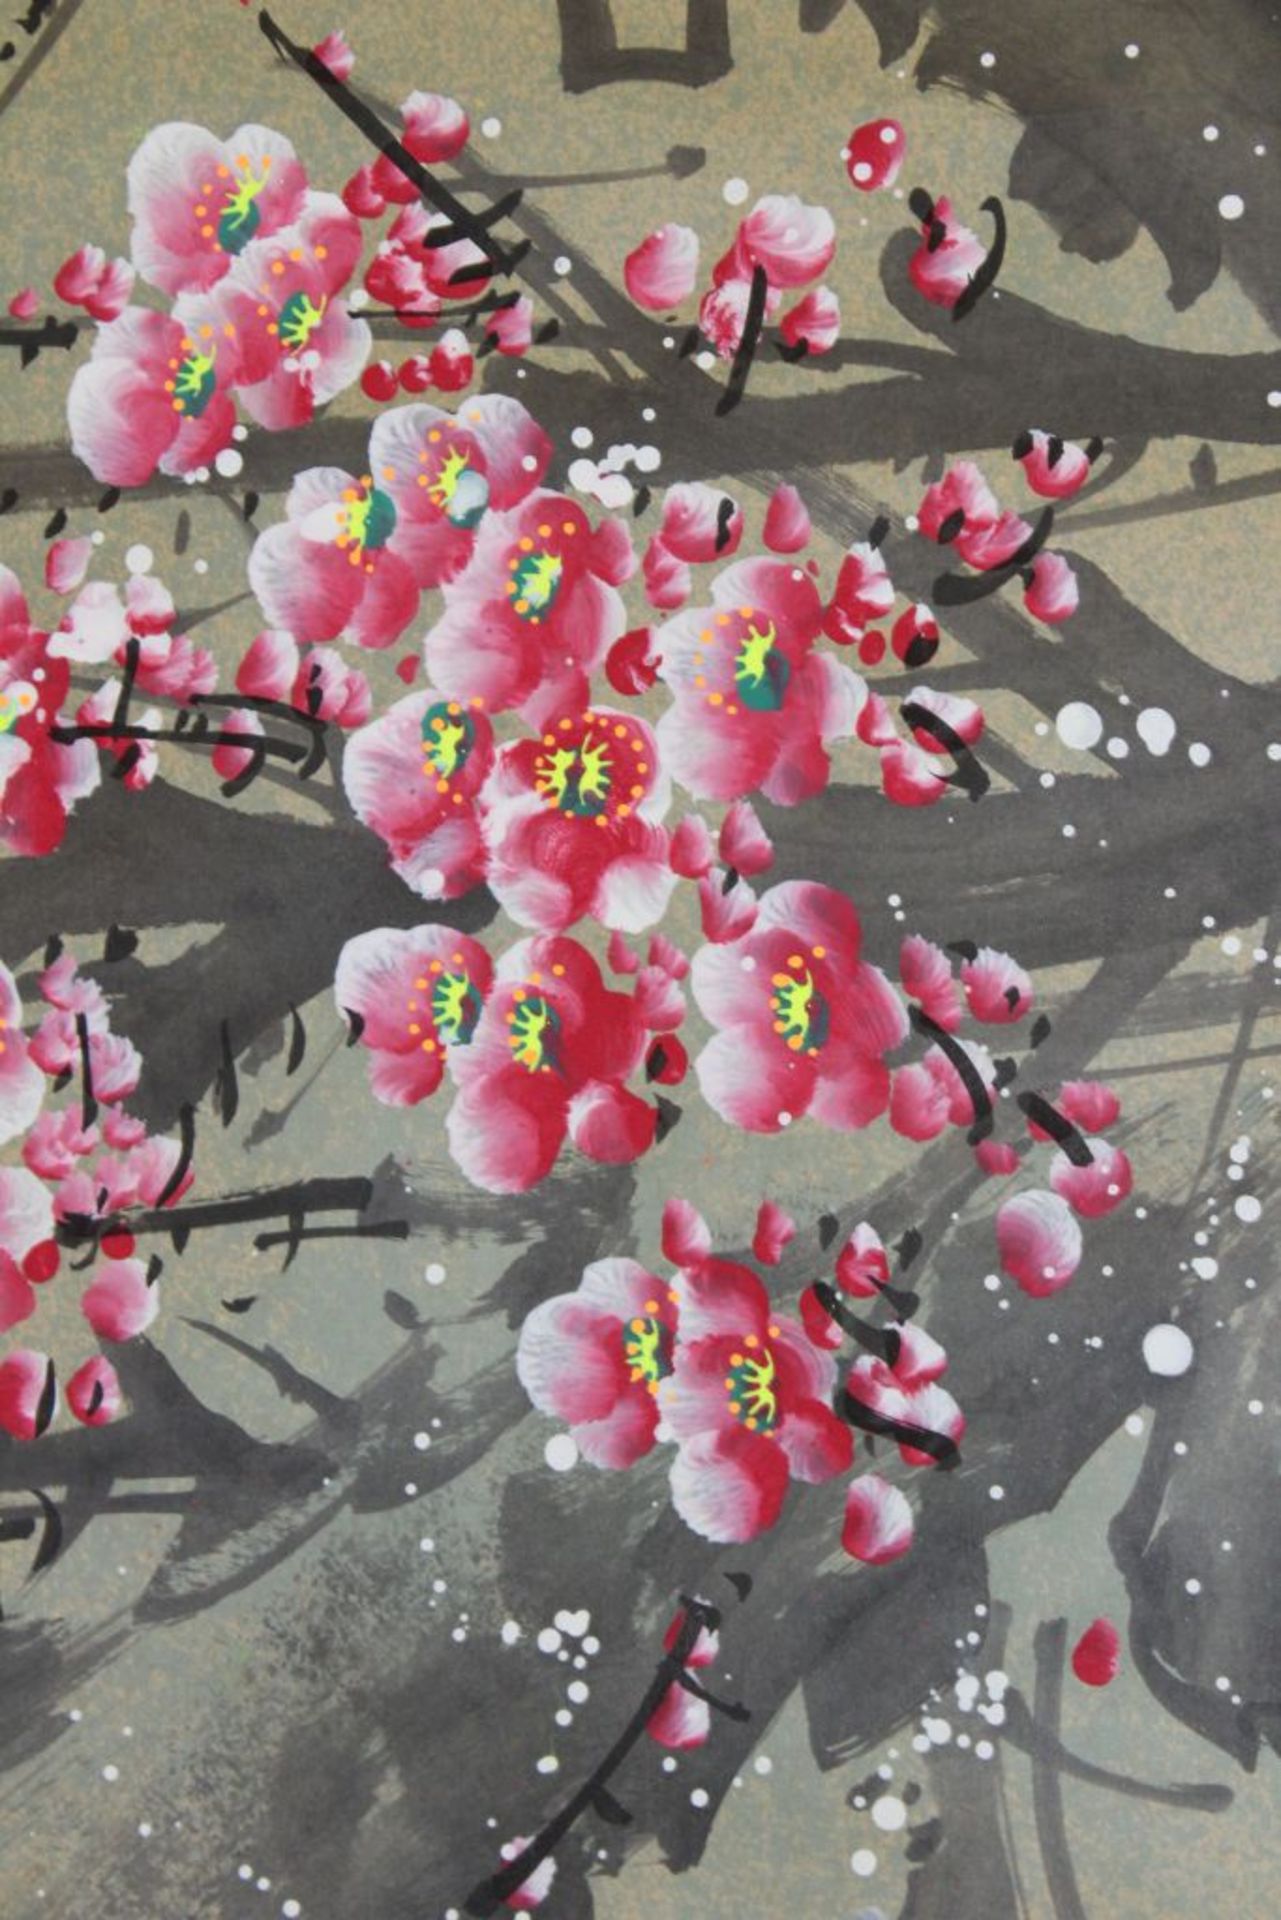 gr. Rollbild, China, Kirschblüten und Vögel, 180 x 73cm- - -22.61 % buyer's premium on the hammer - Bild 3 aus 3